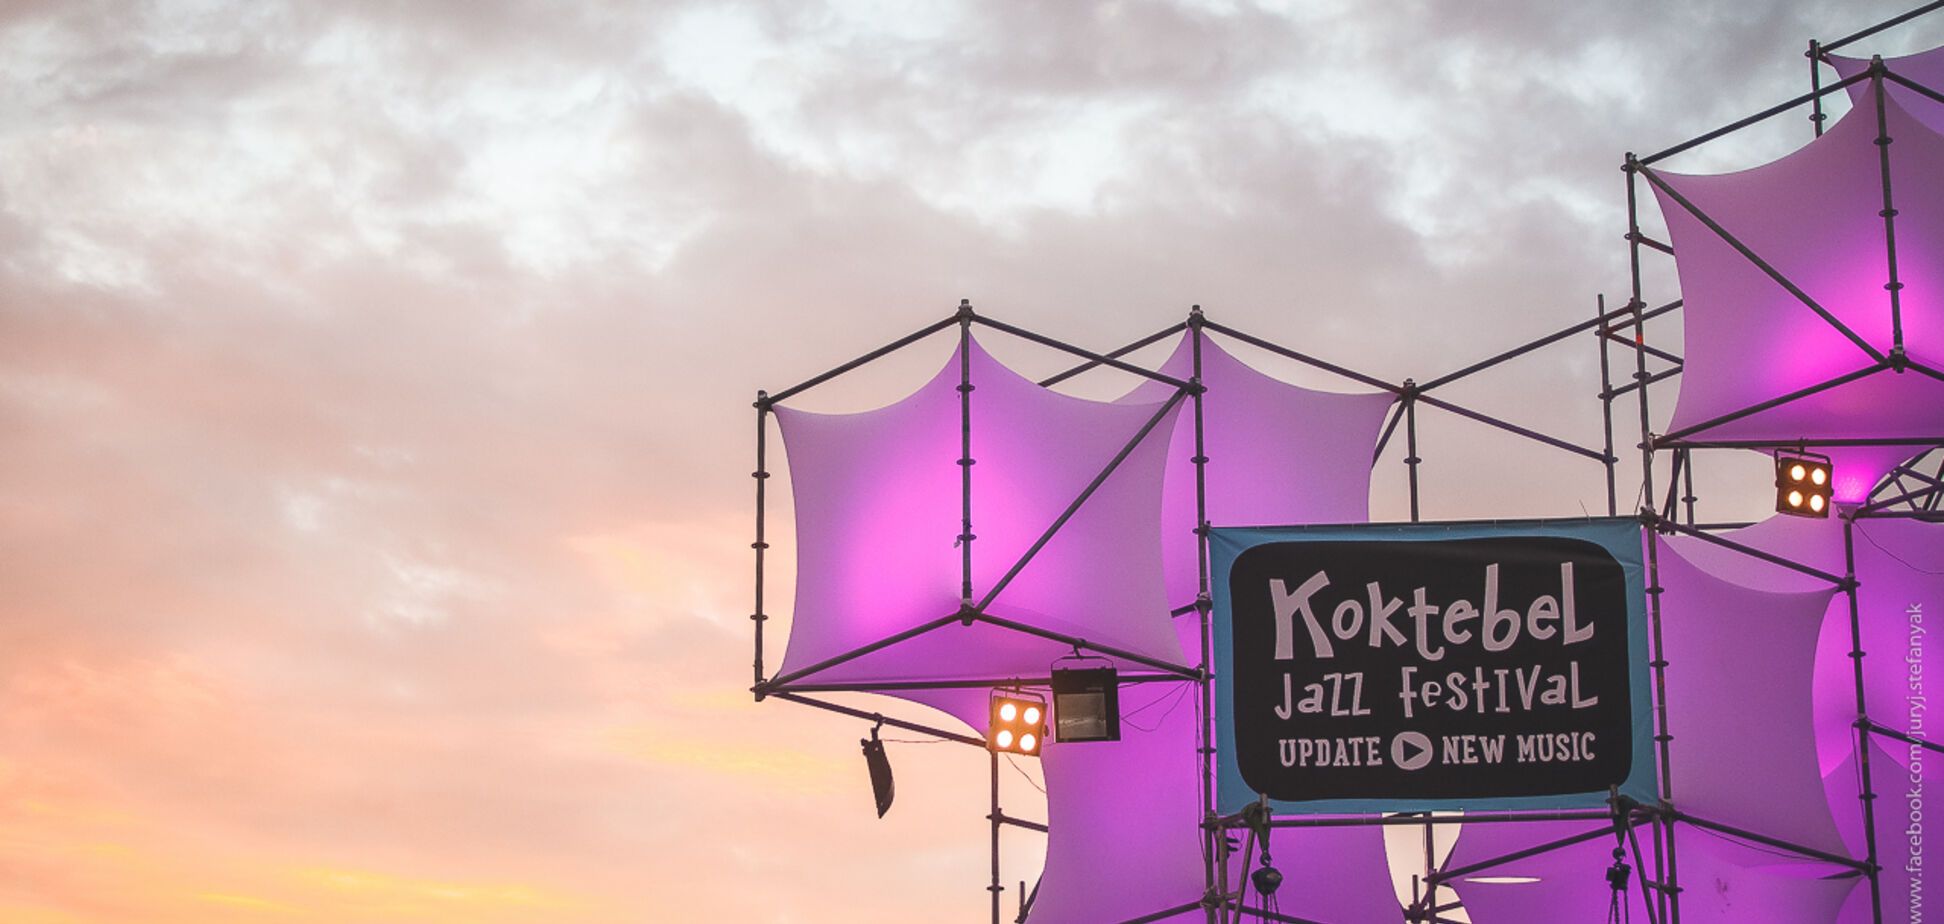 Koktebel Jazz Festival представив повний лайн-ап всіх 4 сцен